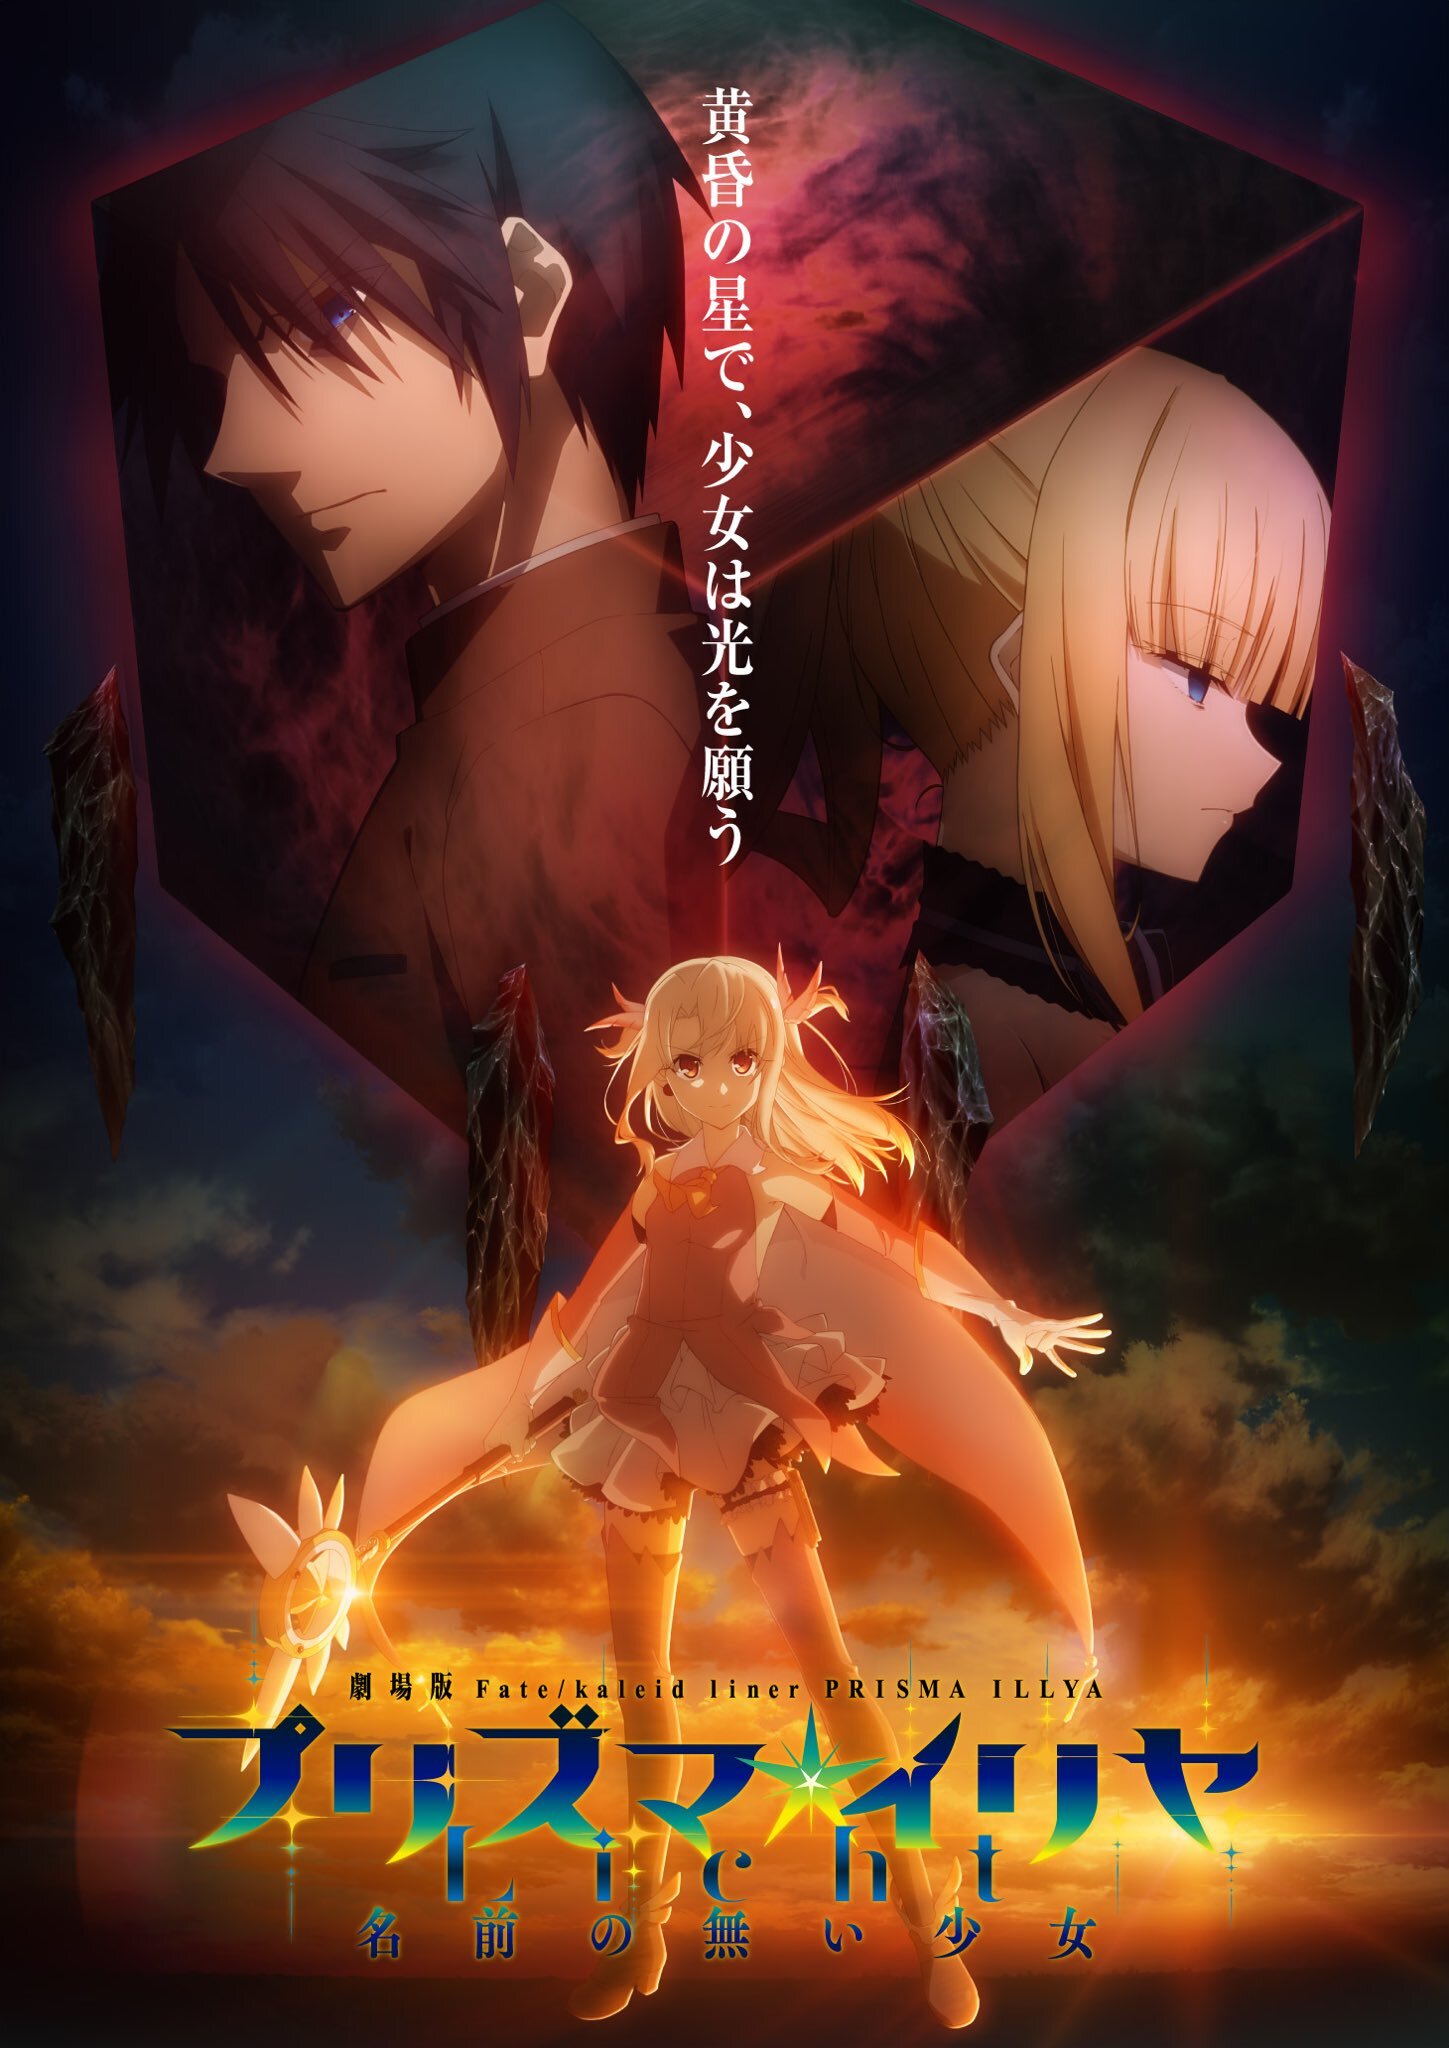 Fate / kaleid liner Prisma novo filme revela título e teaser visual